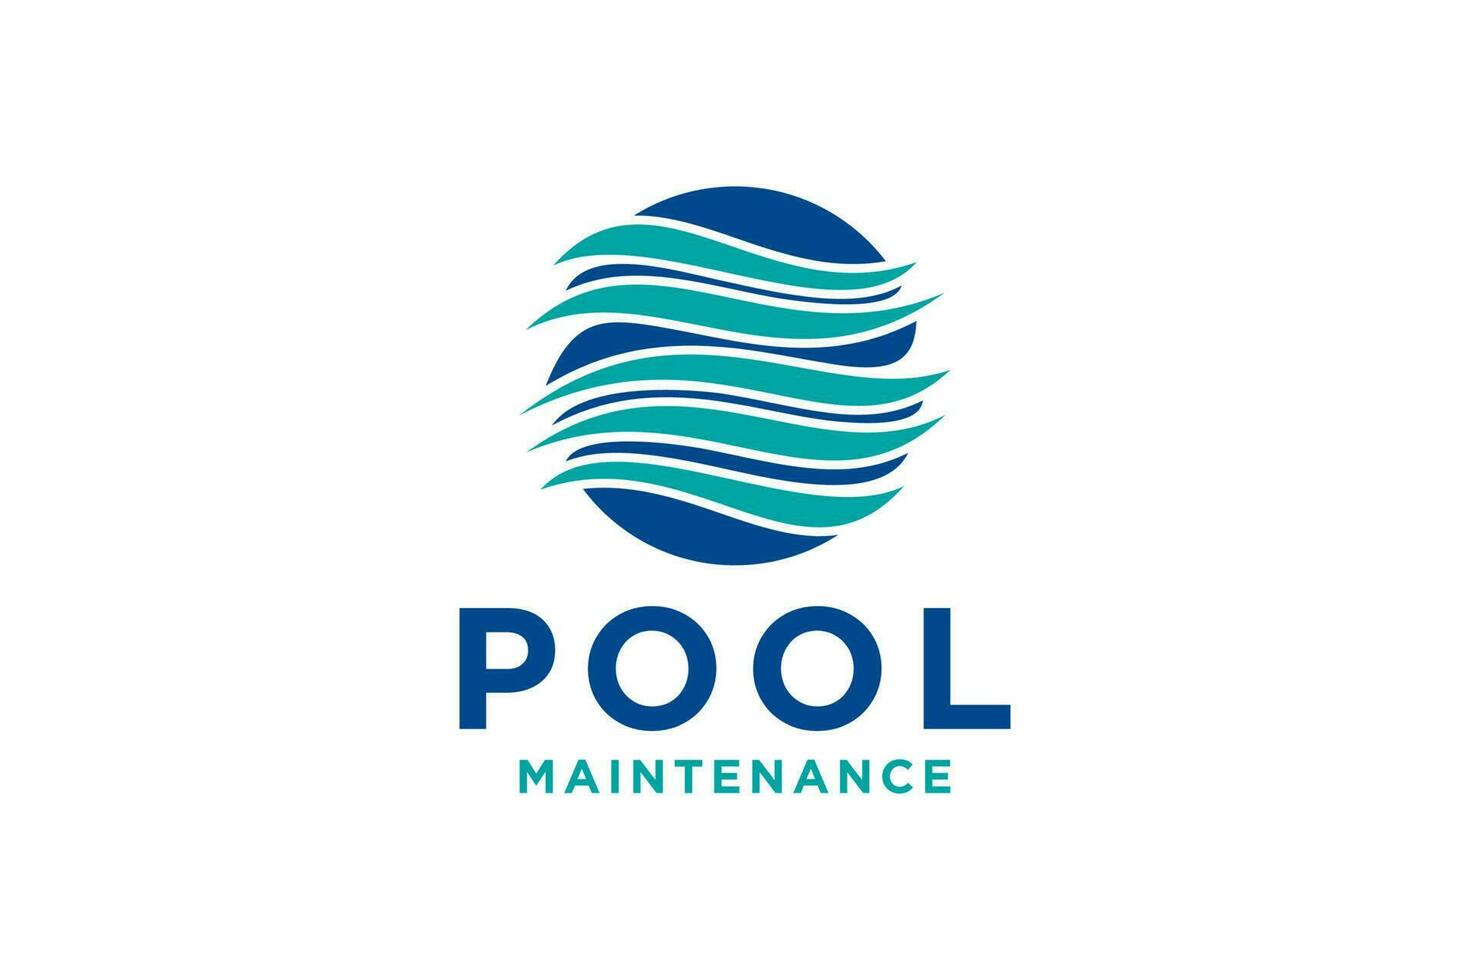 natação piscina serviço logotipo com limpeza piscina e manutenção conceito. vetor